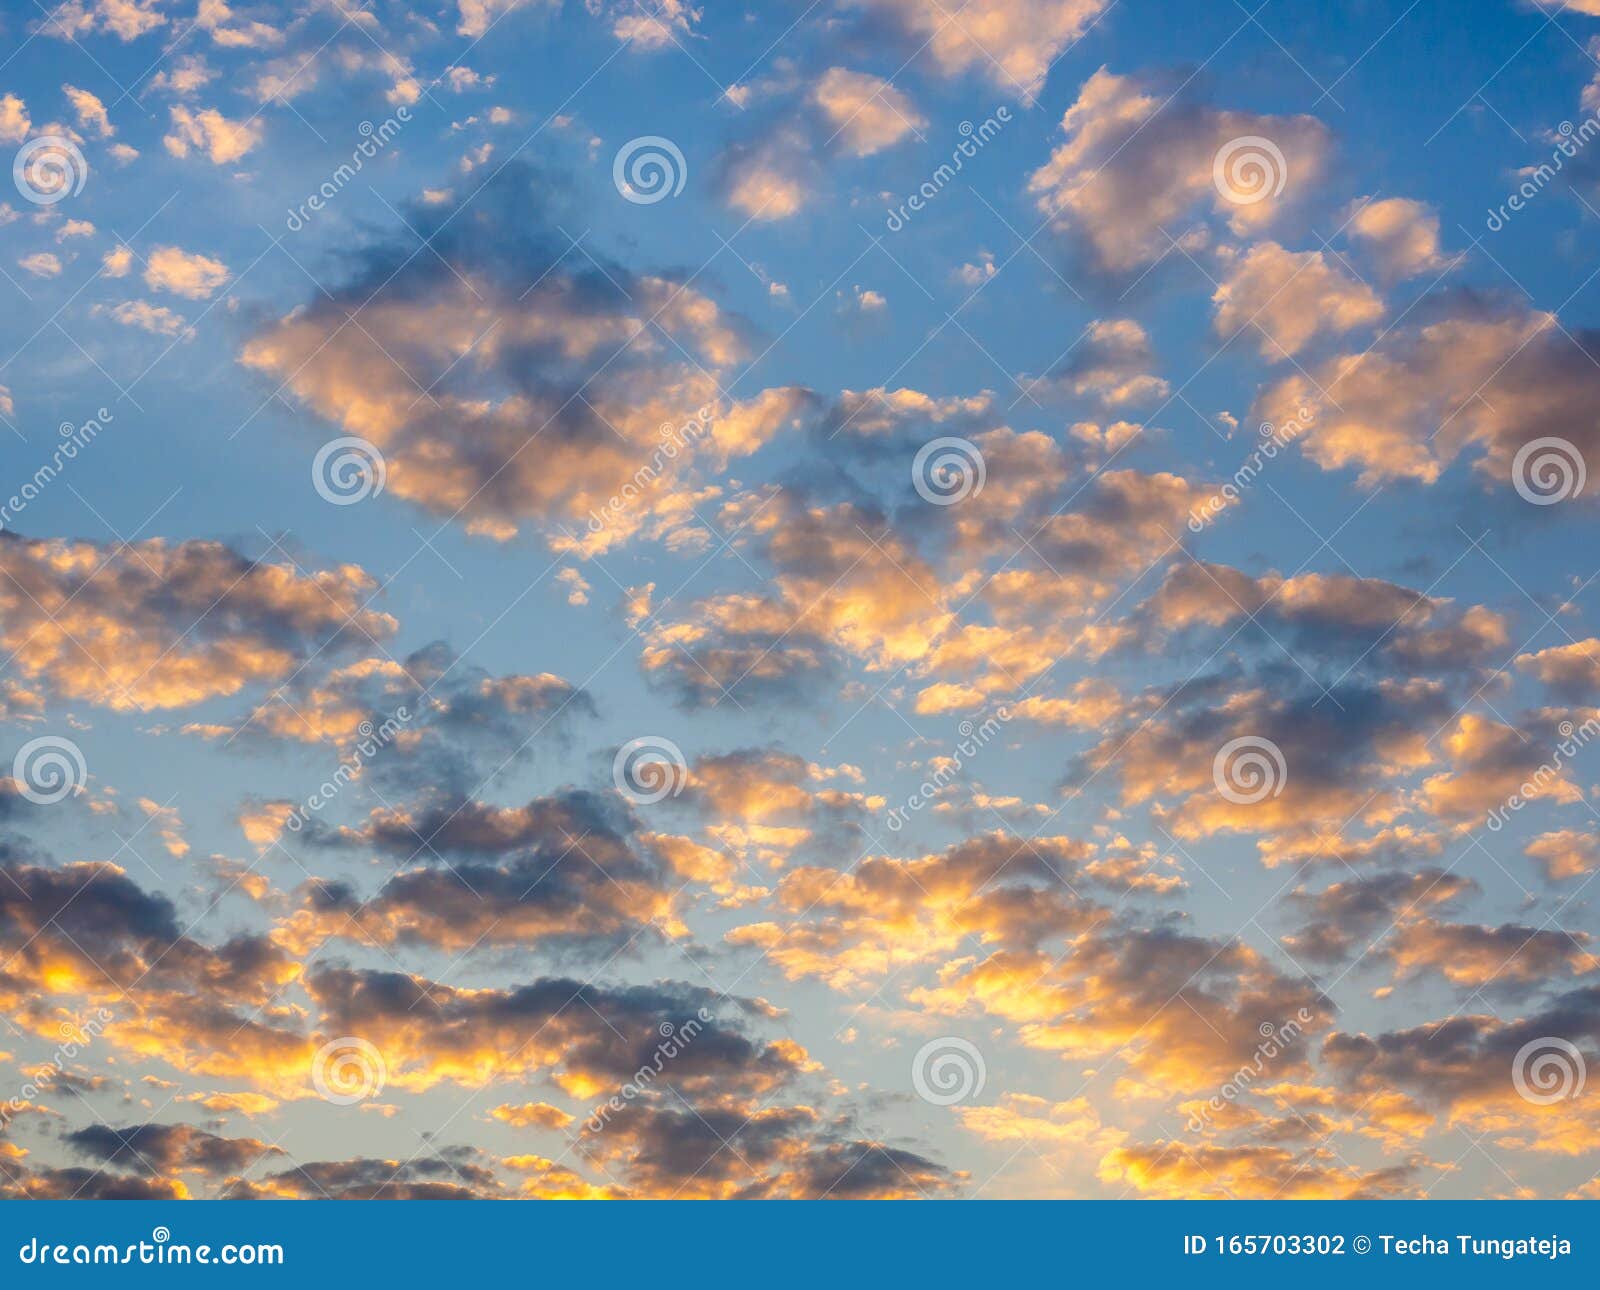 Đám mây vàng đang di chuyển trên bầu trời như một bức tranh khổng lồ được vẽ bởi tạo hóa. Một cảm giác tuyệt vời đang chờ bạn ở hình ảnh đầy ấn tượng này. Hãy đón xem để cảm nhận được sức mạnh và vẻ đẹp của thiên nhiên.